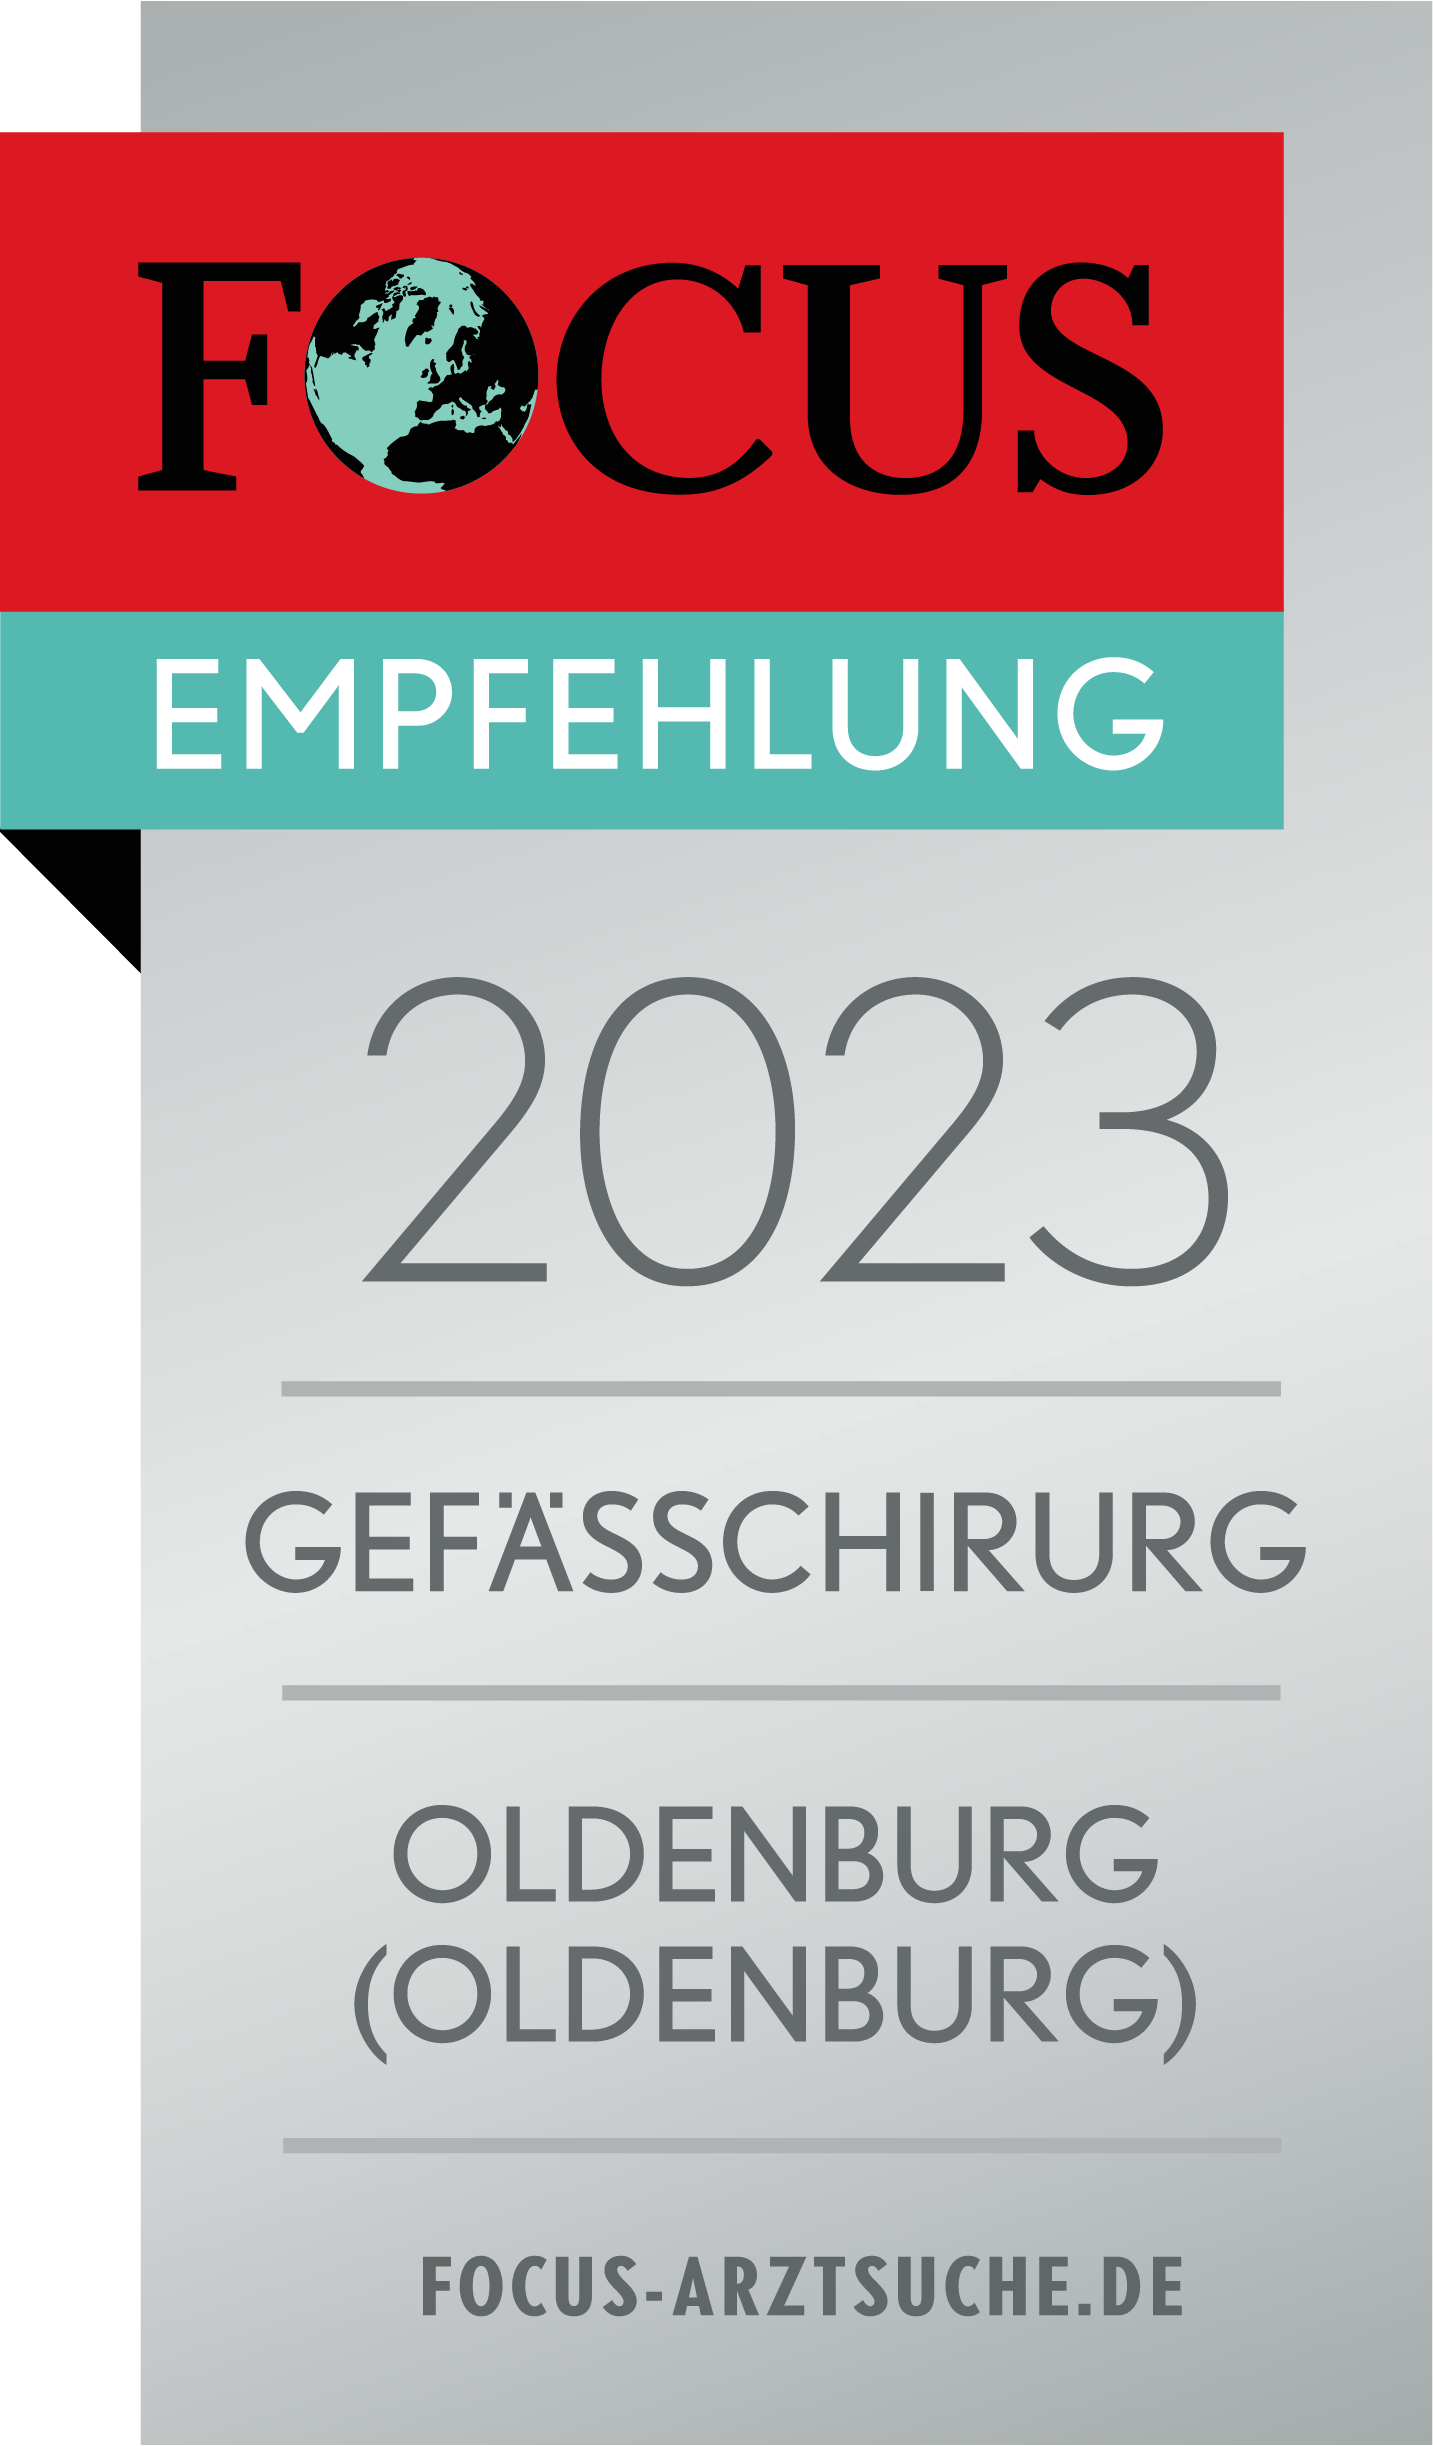 Focus Empfehlung 2022 Gefäßchirurg Oldenburg